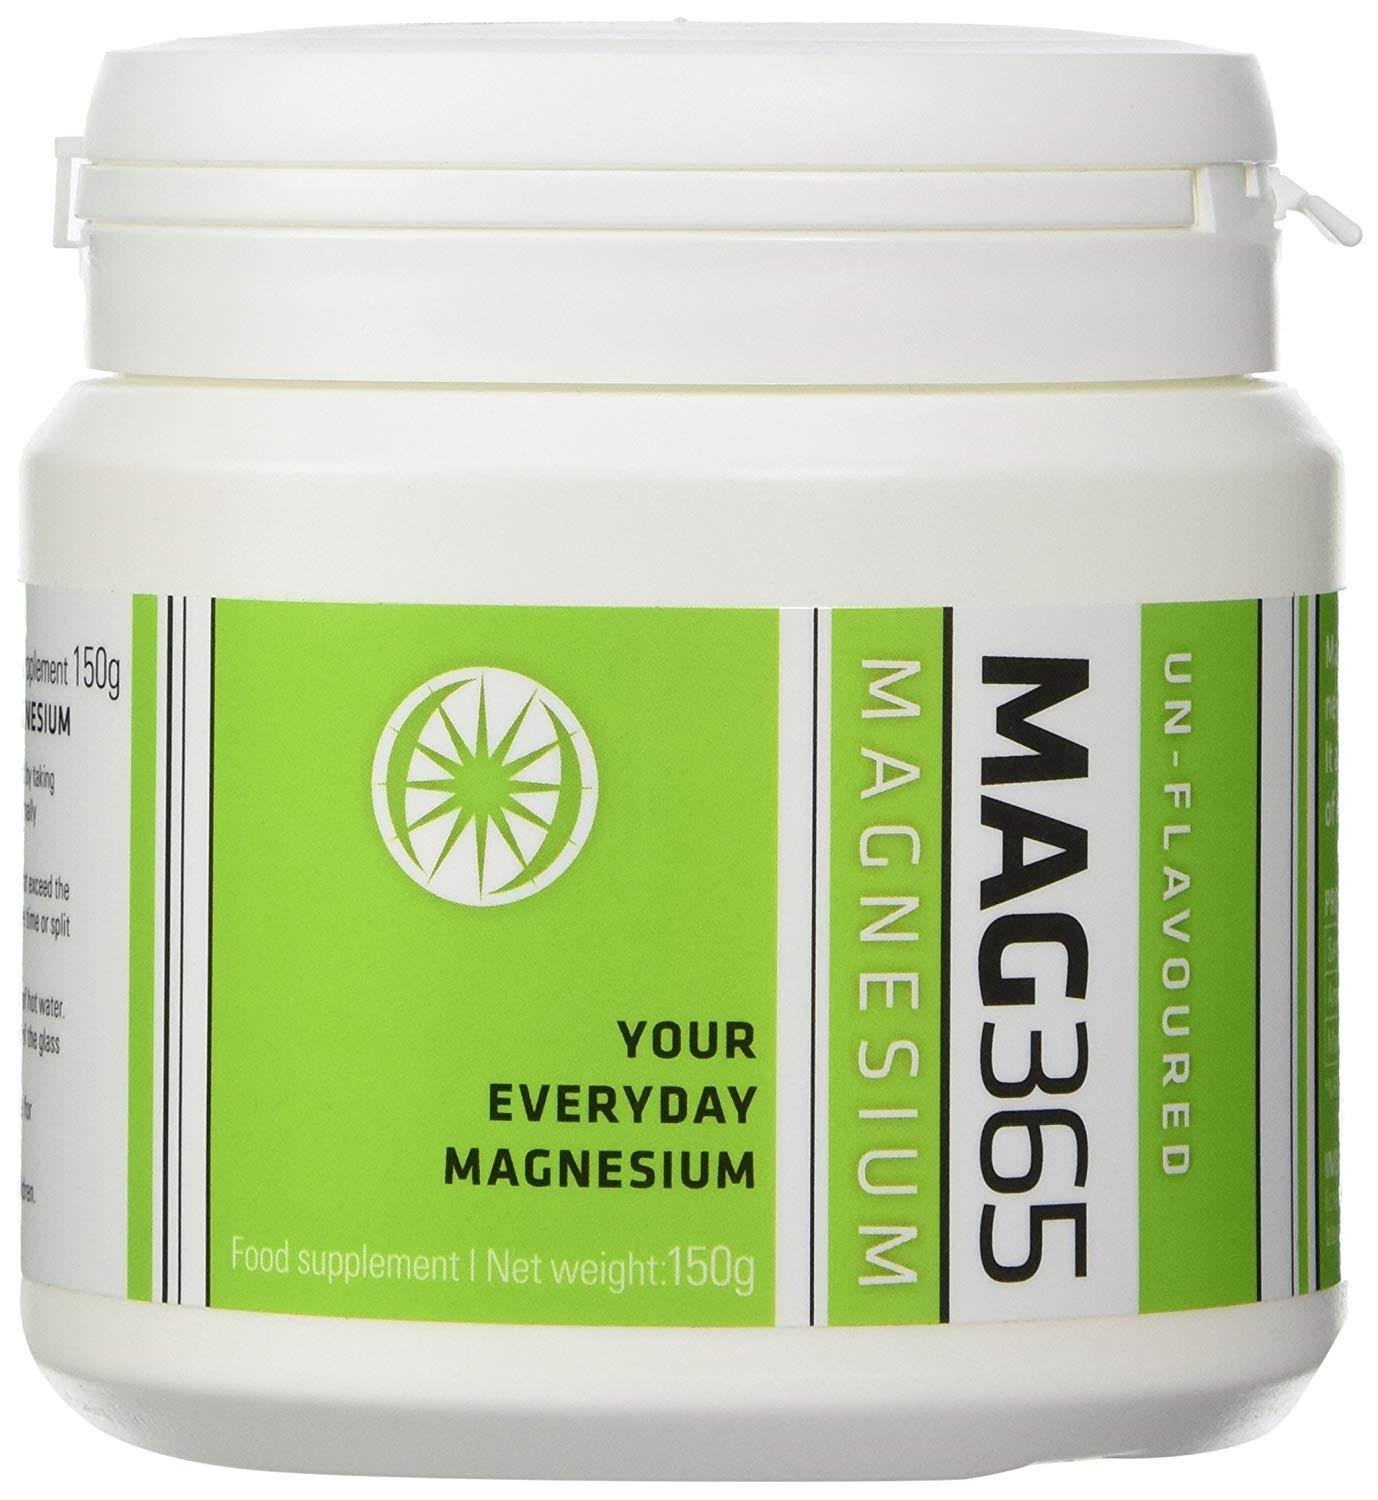 MAG365 Magnesium 150g